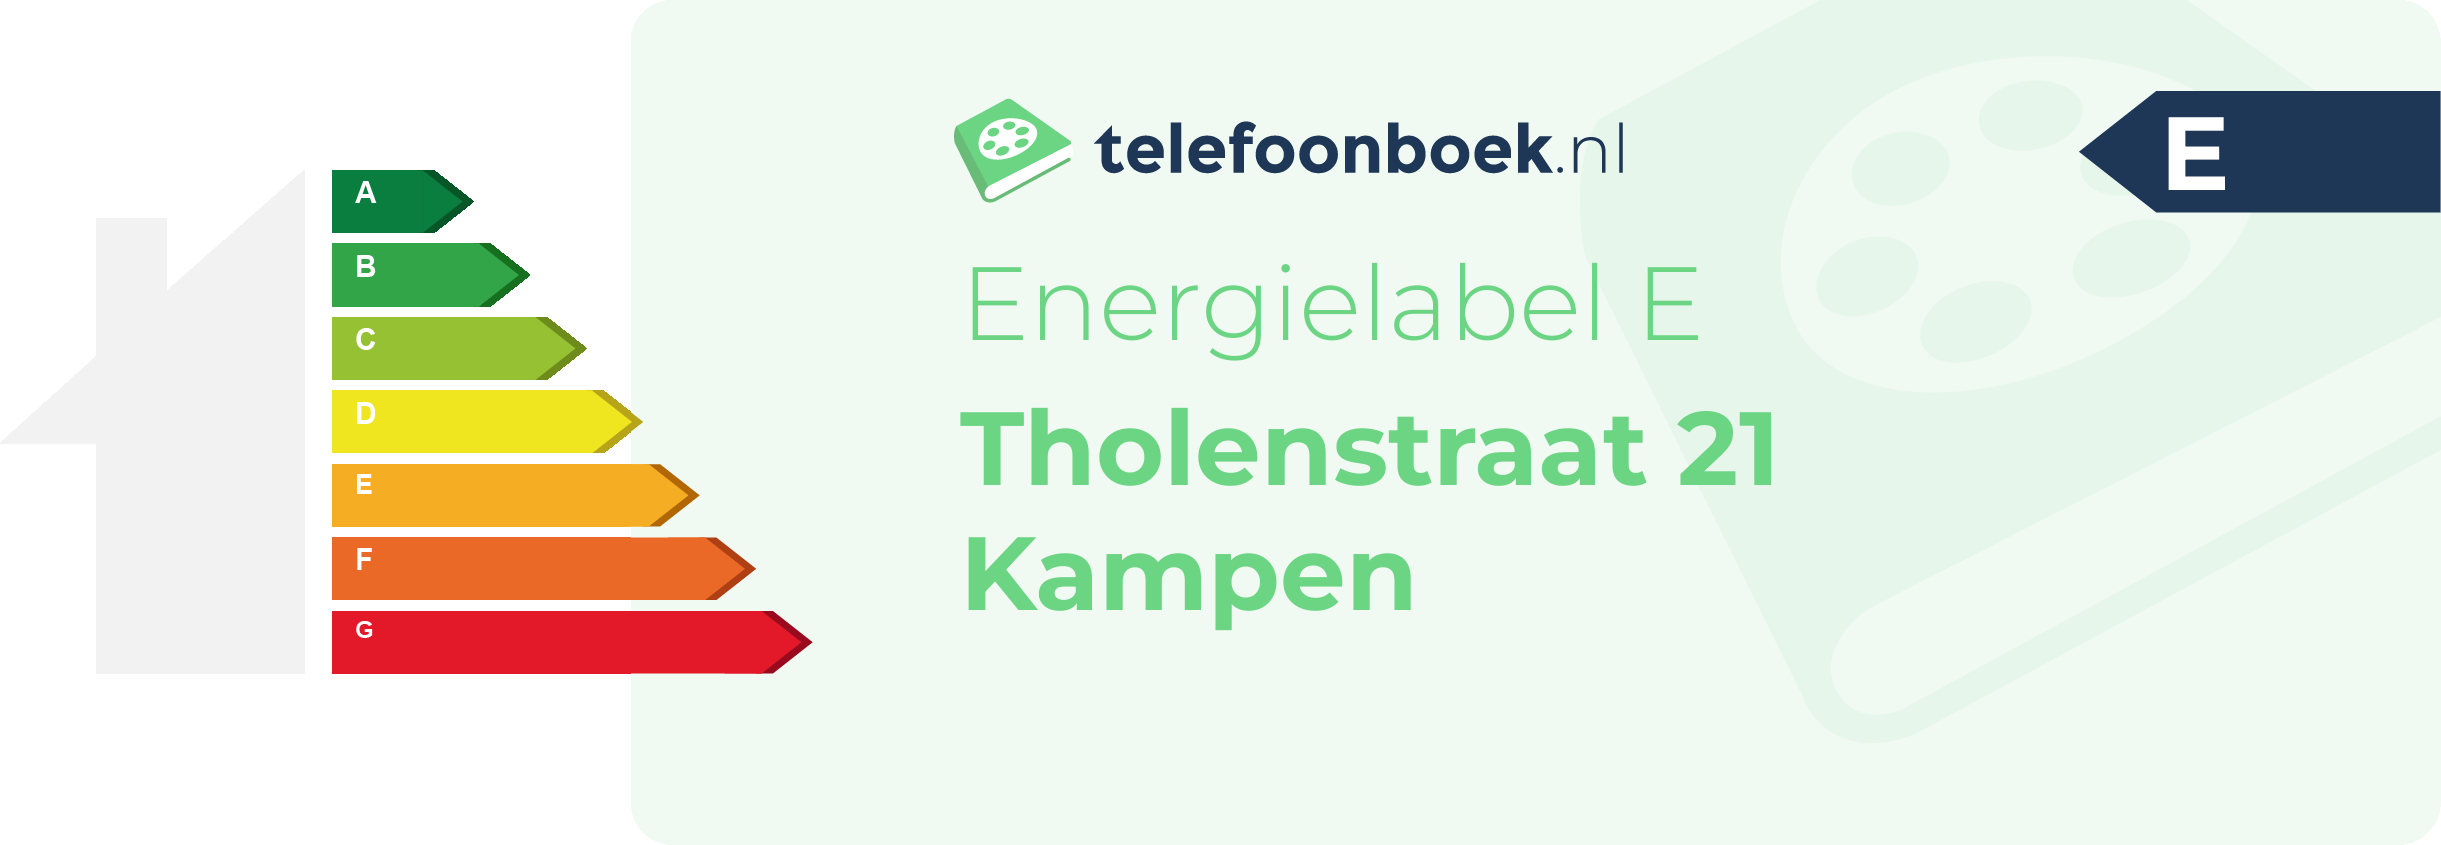 Energielabel Tholenstraat 21 Kampen